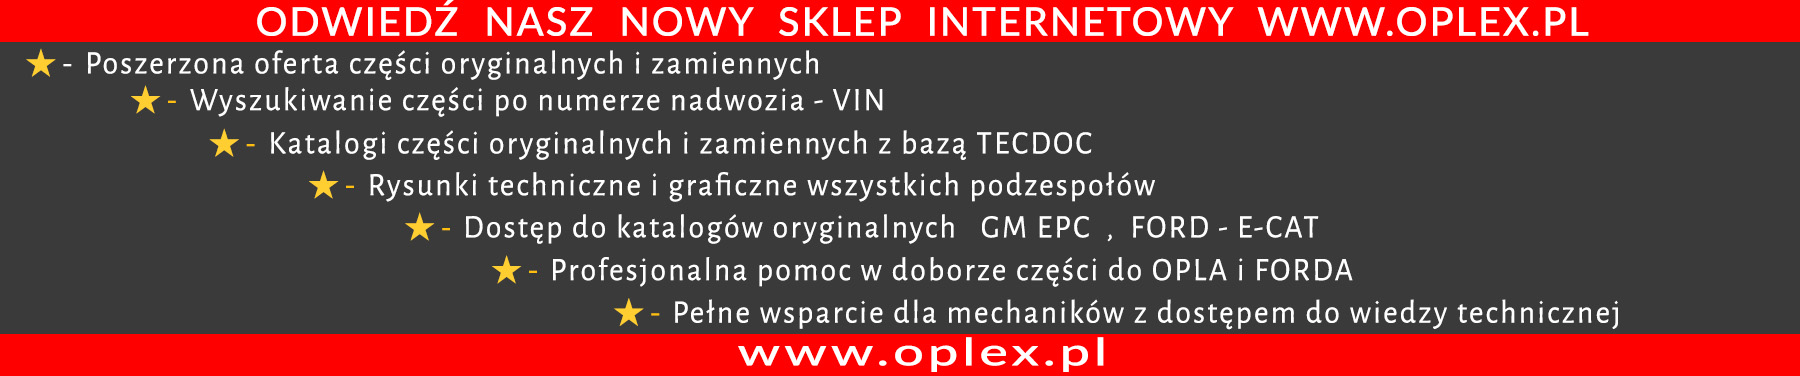 sklep internetowy Oplex.pl 